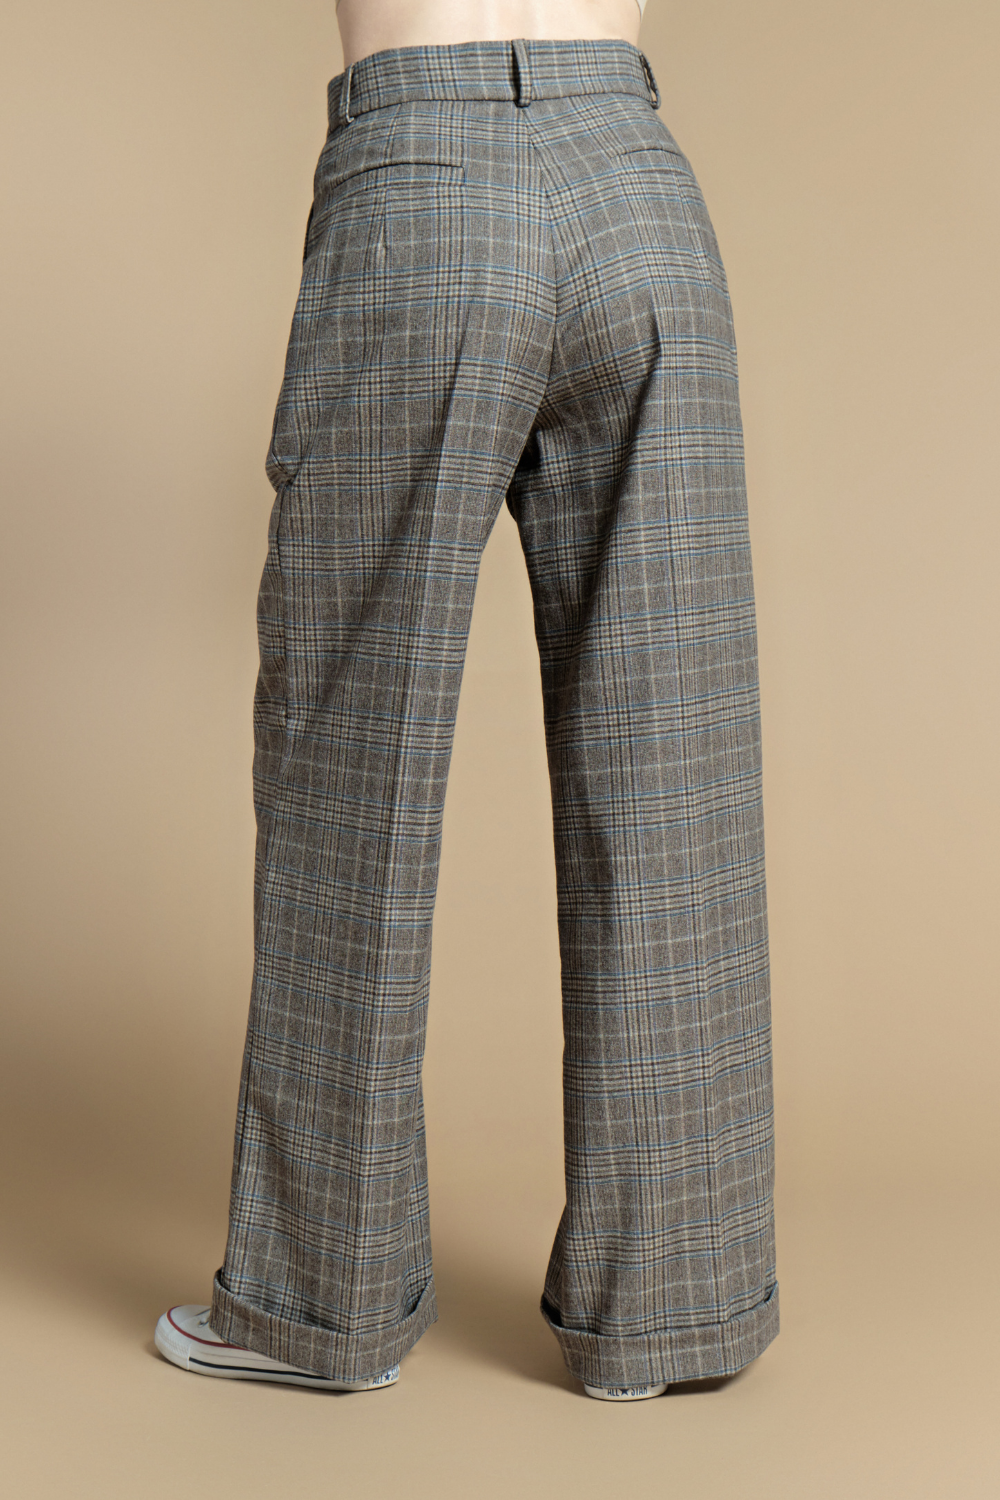 Pants, gray check (TLL)